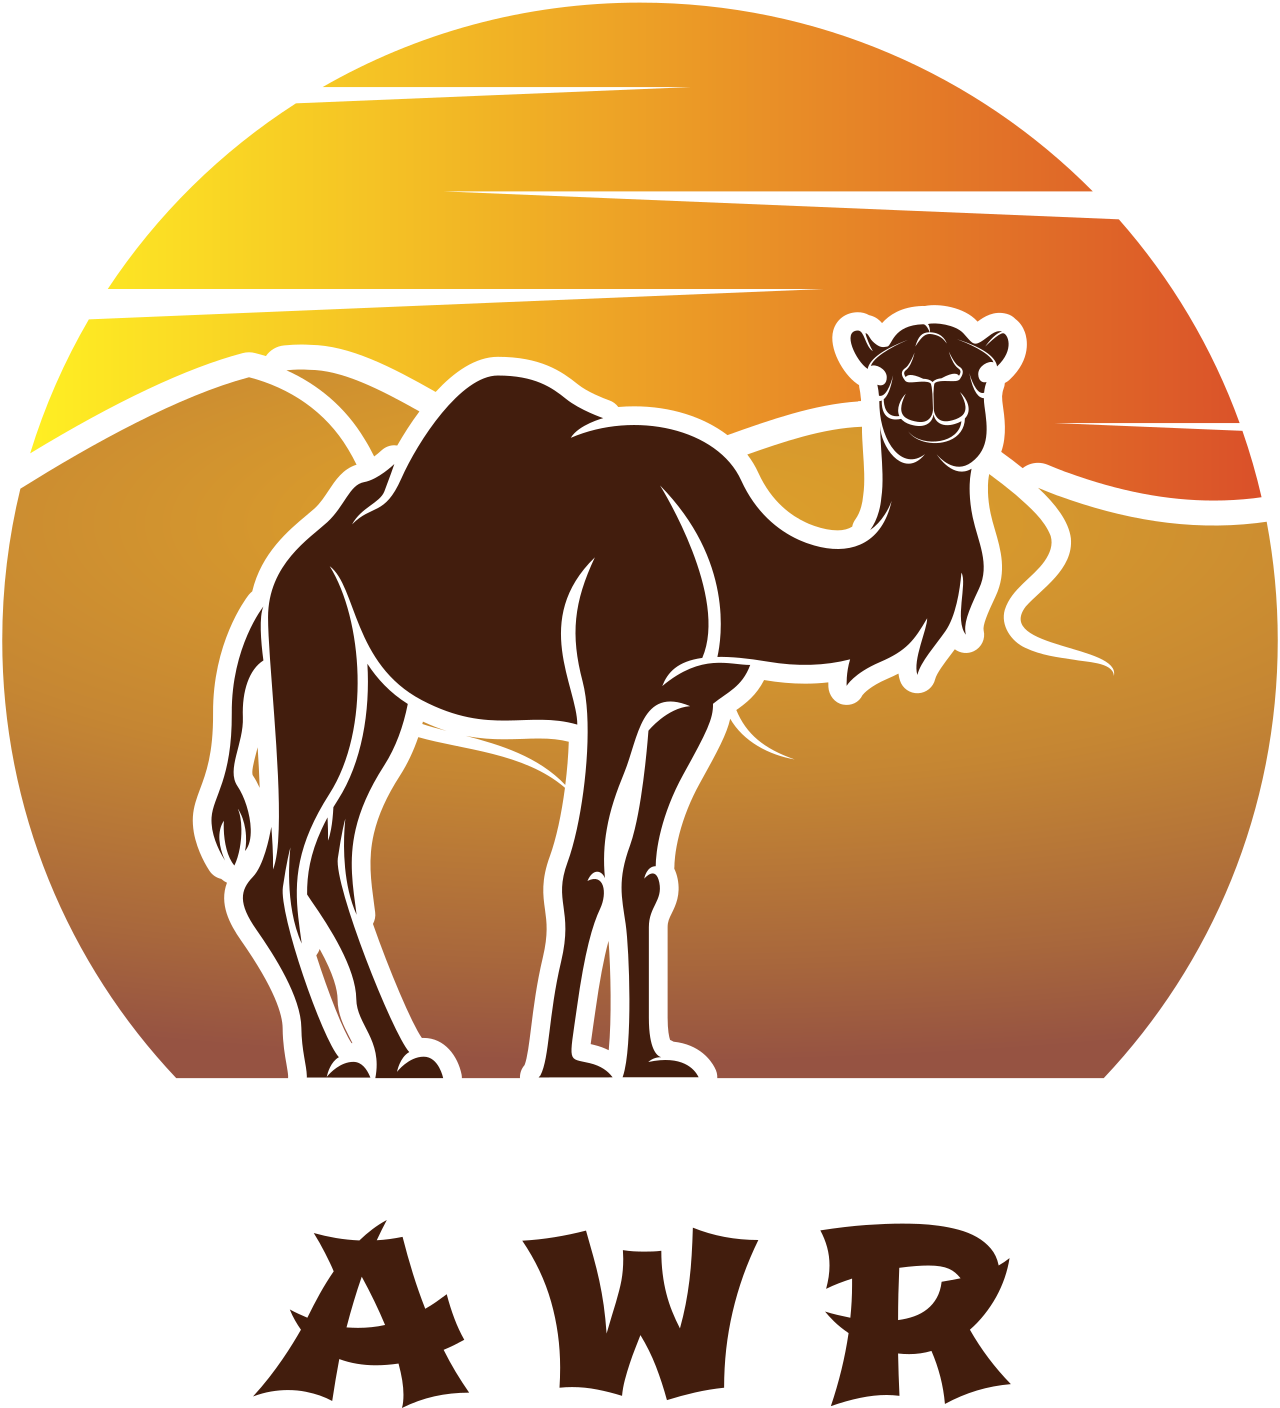 Awr's logo